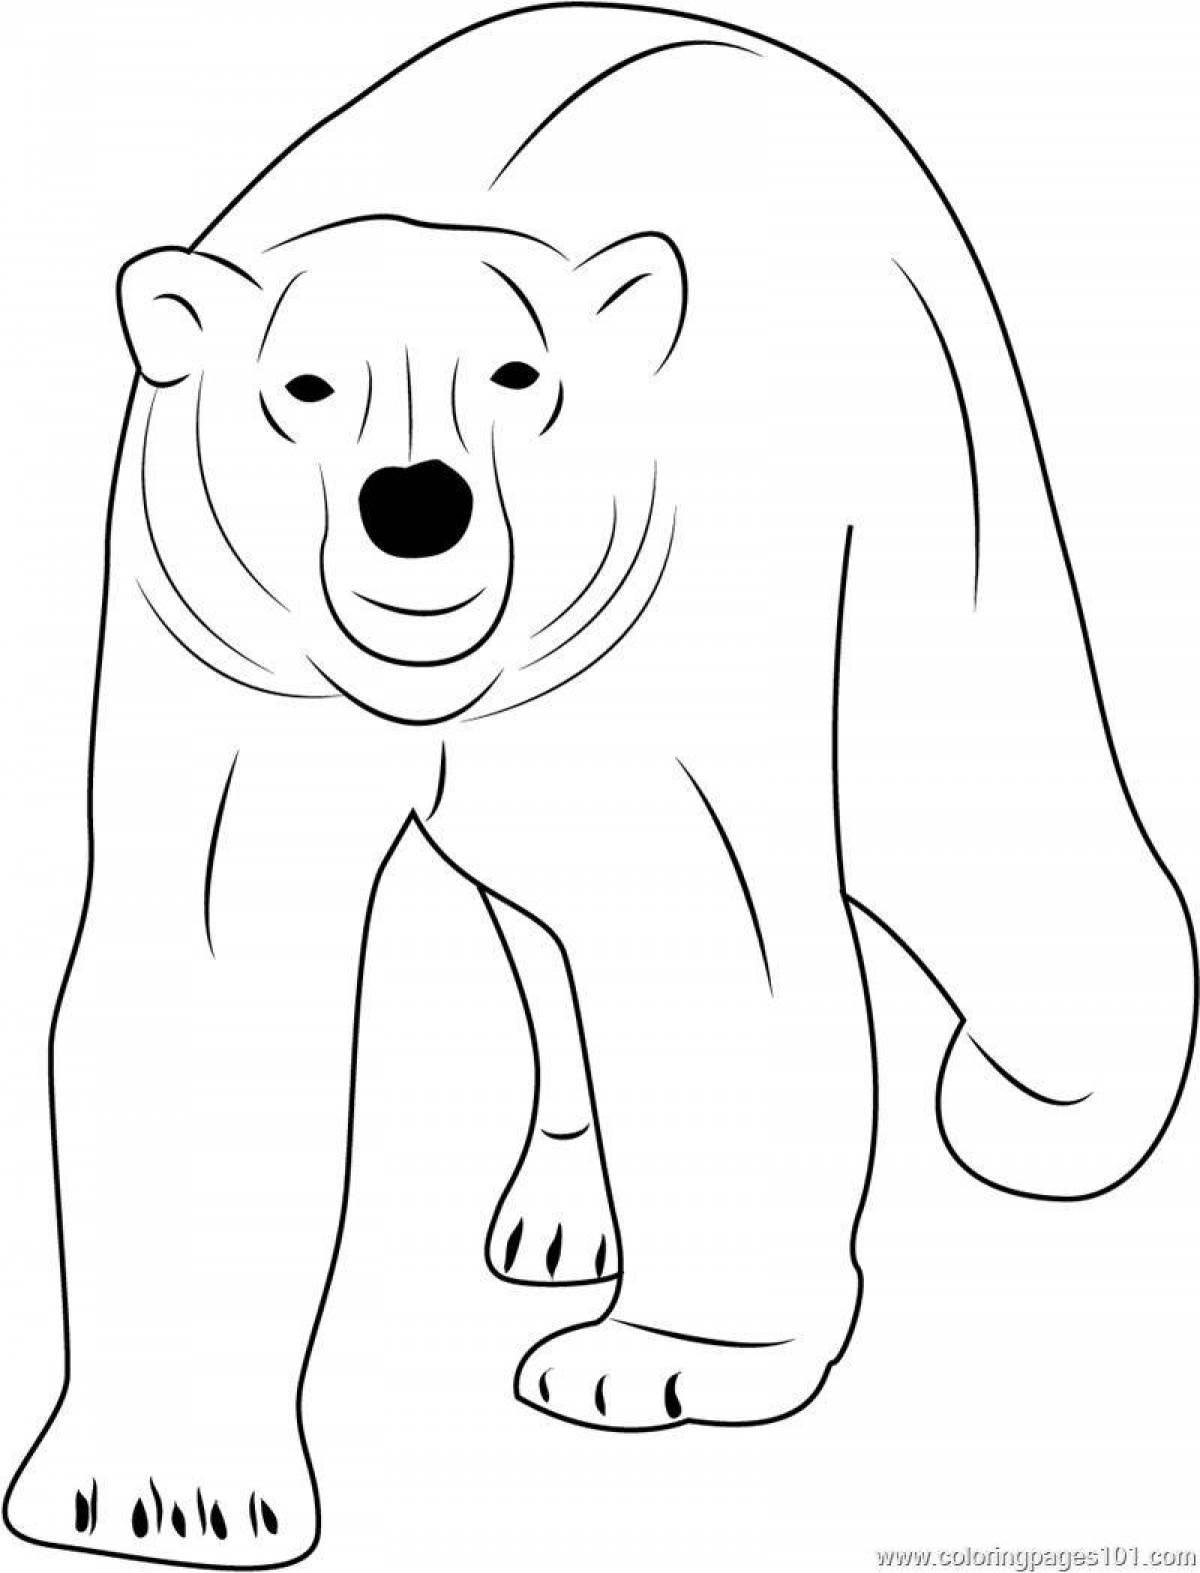 Coloring book magical polar bear